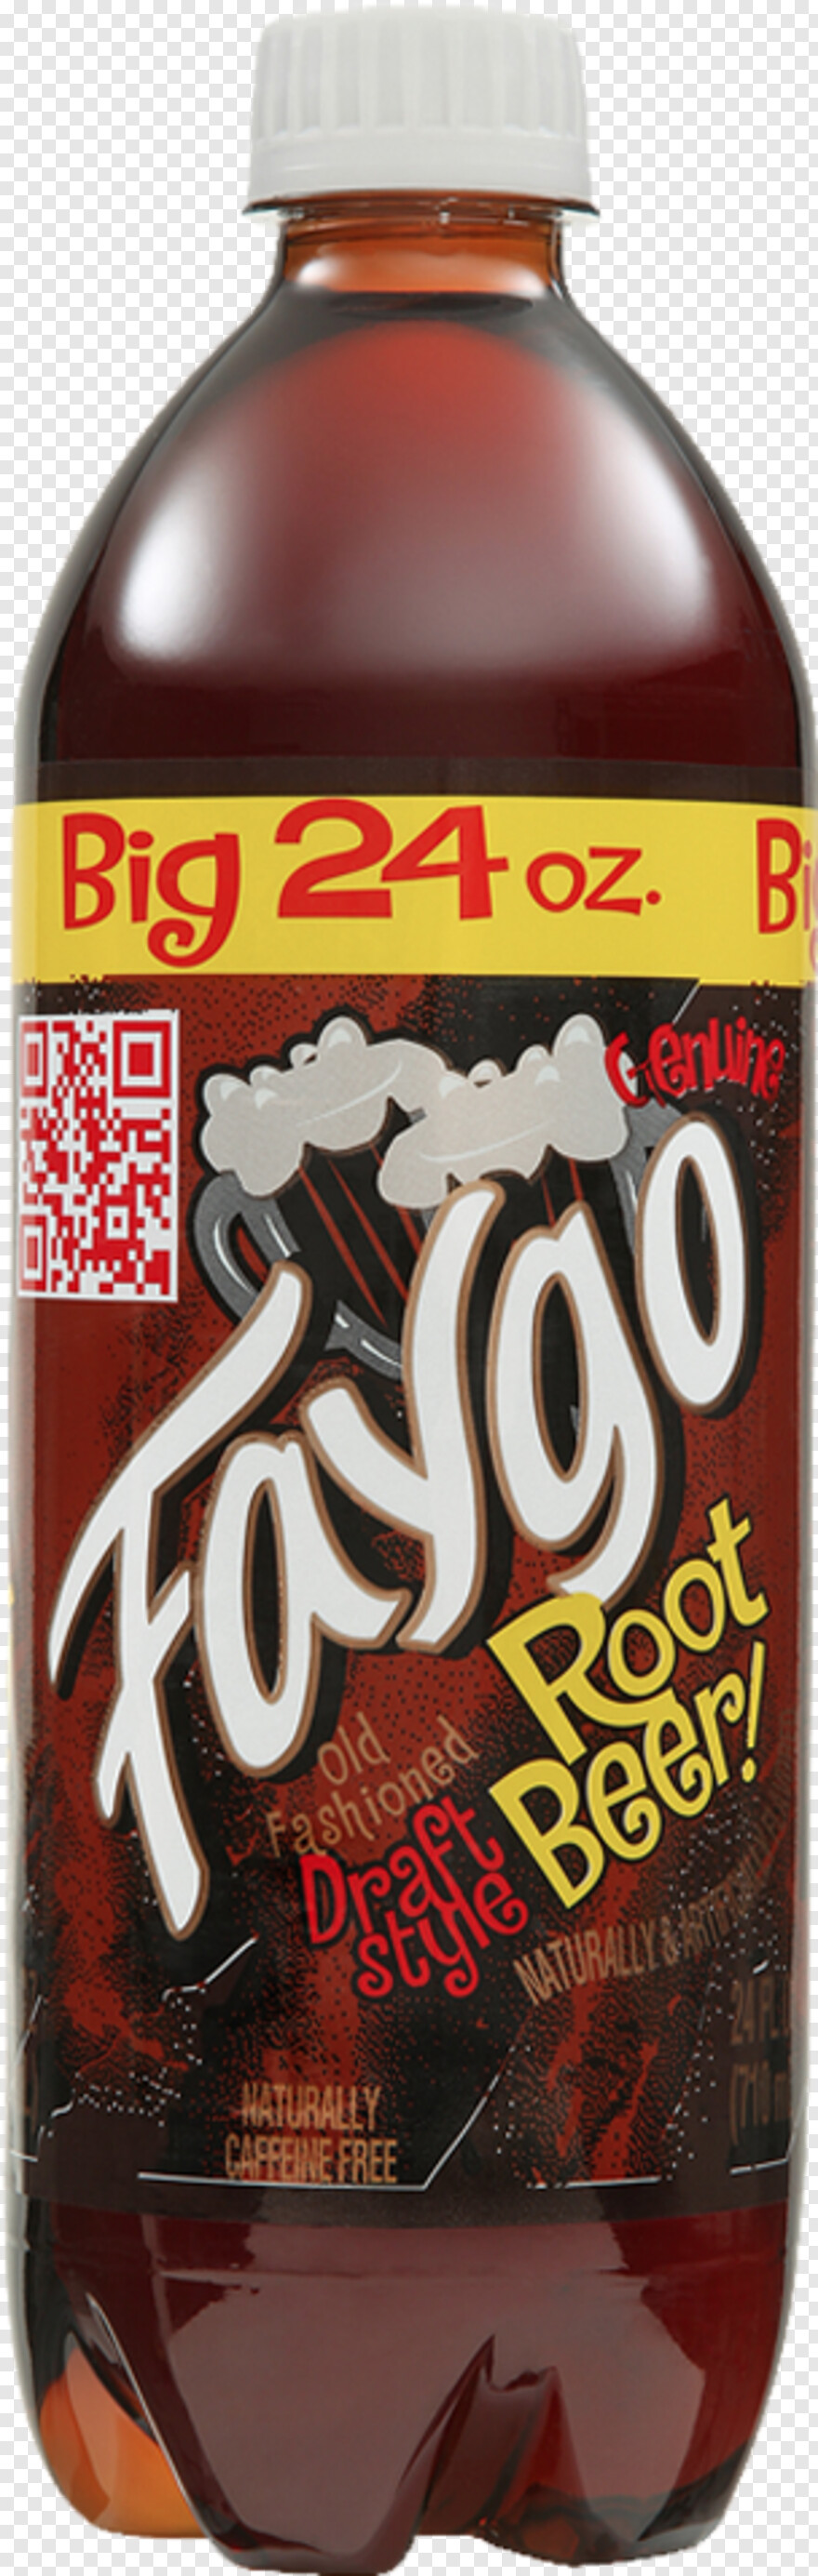 root-beer # 380180